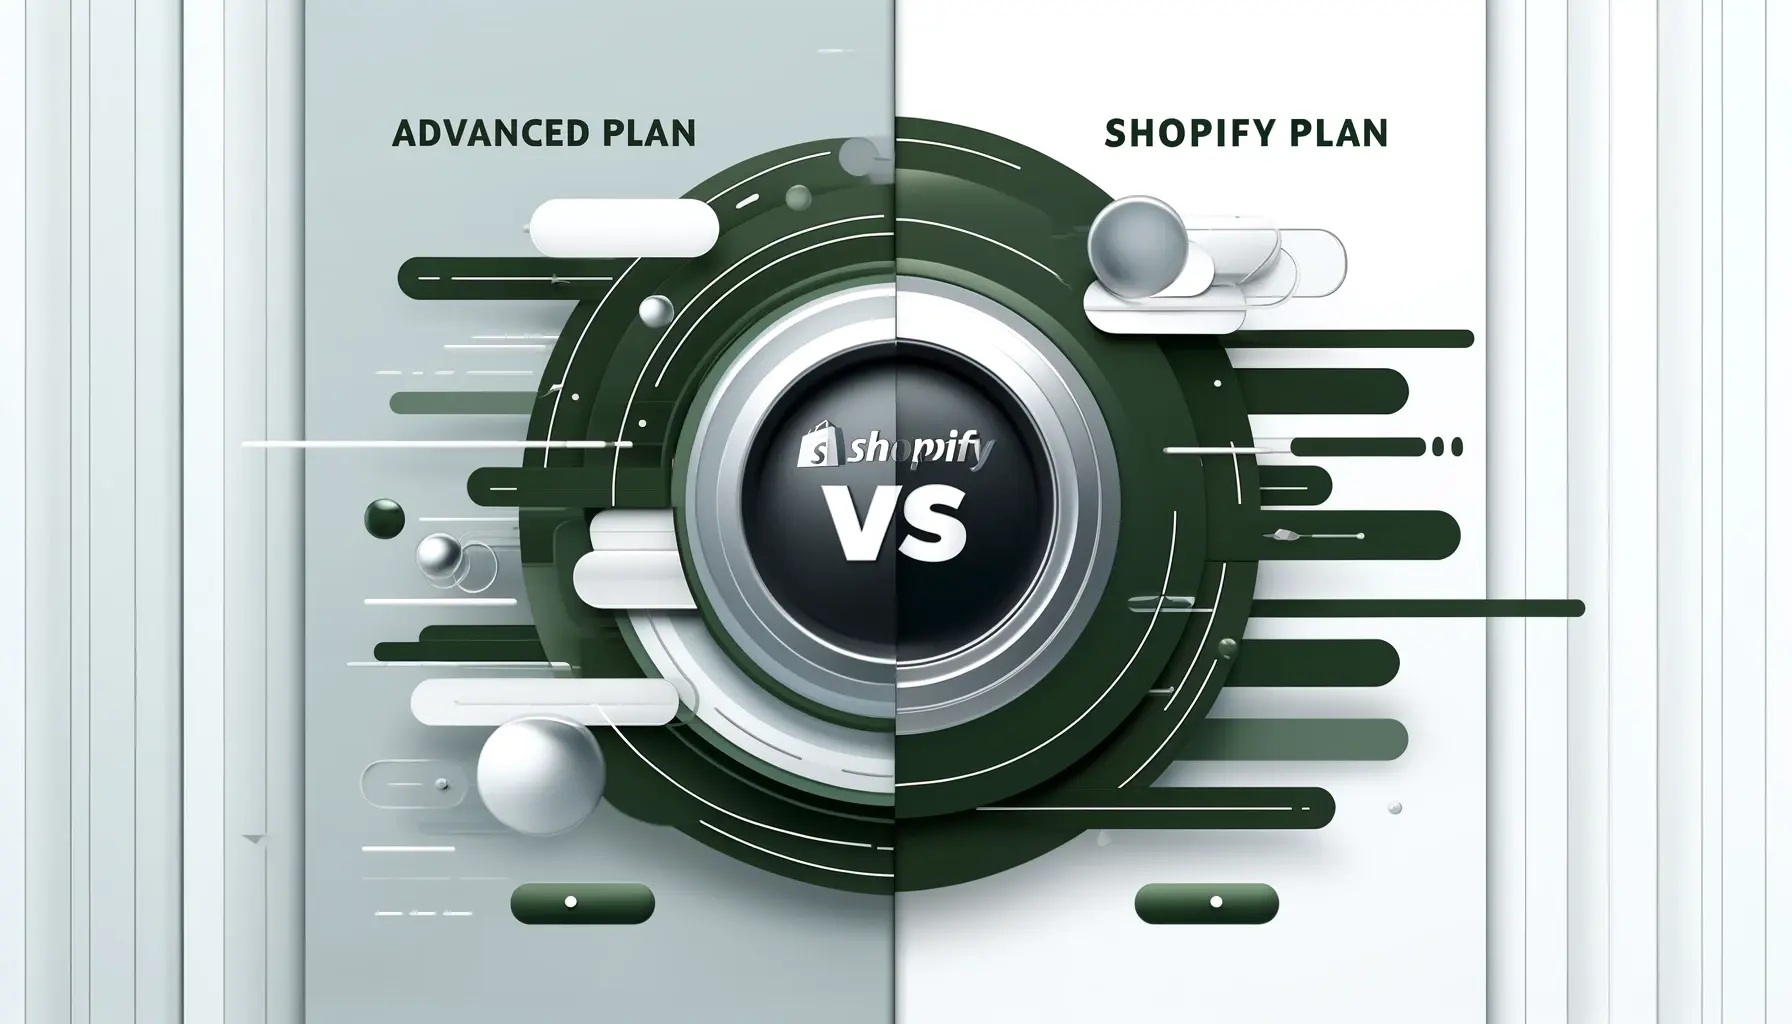 Shopify Advanced Plan vs Shopify Plan